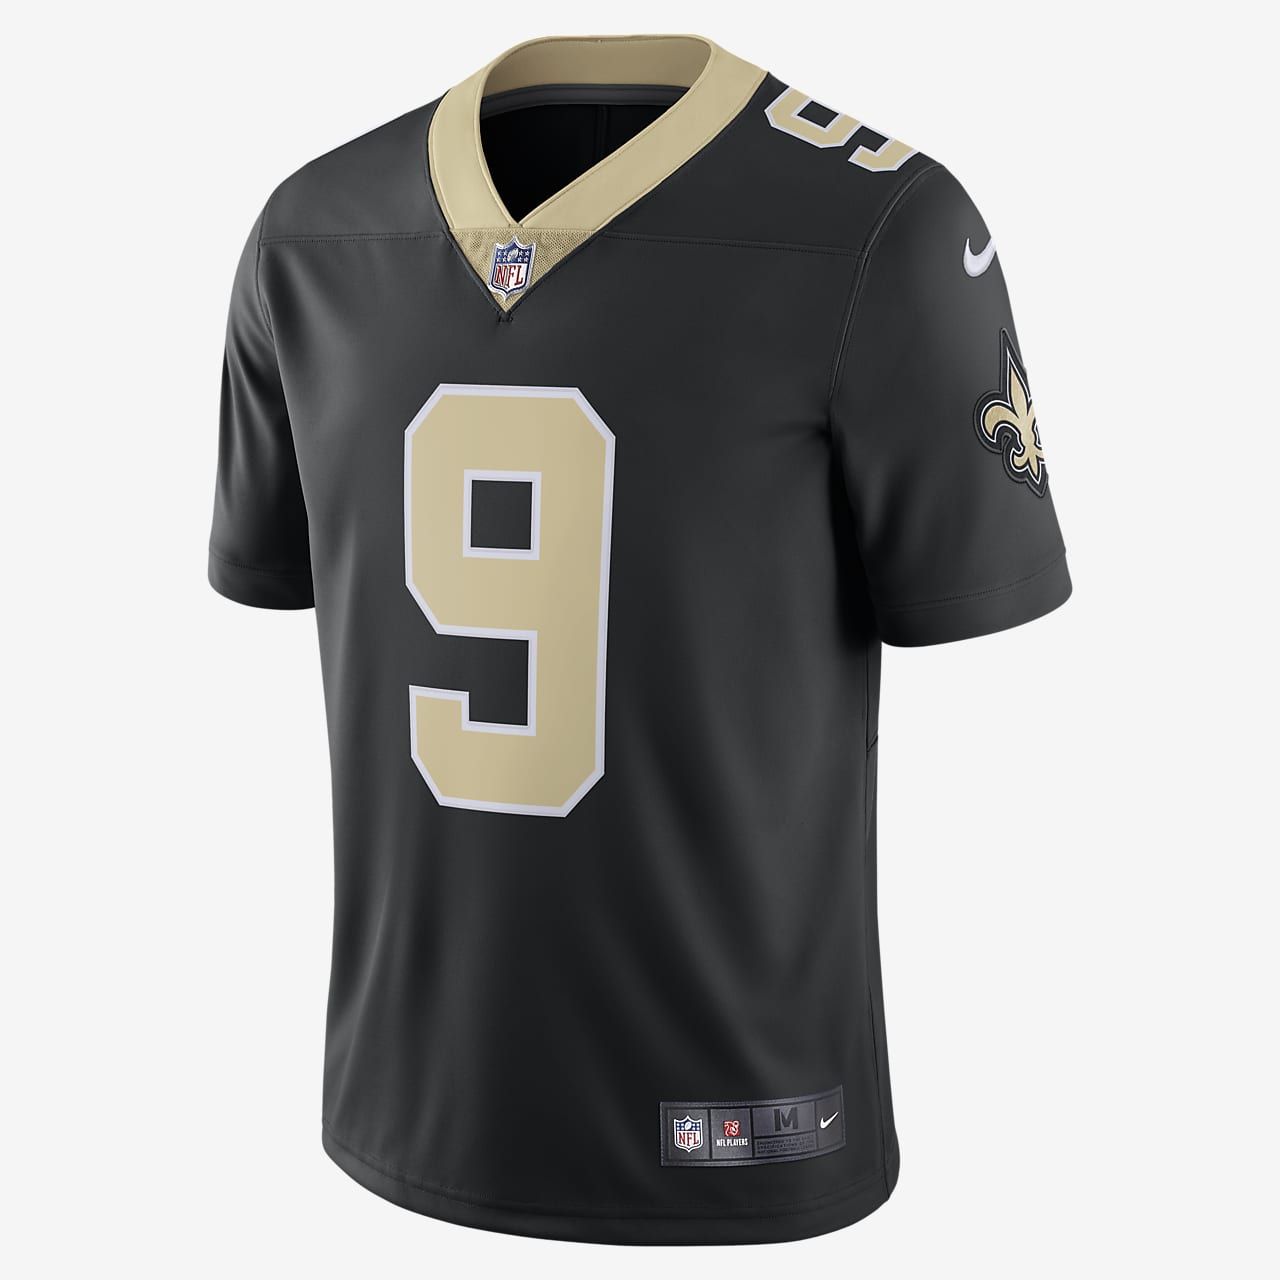 NFL New Orleans Saints (Drew Brees) Men's Limited Vapor Untouchable Football Jersey